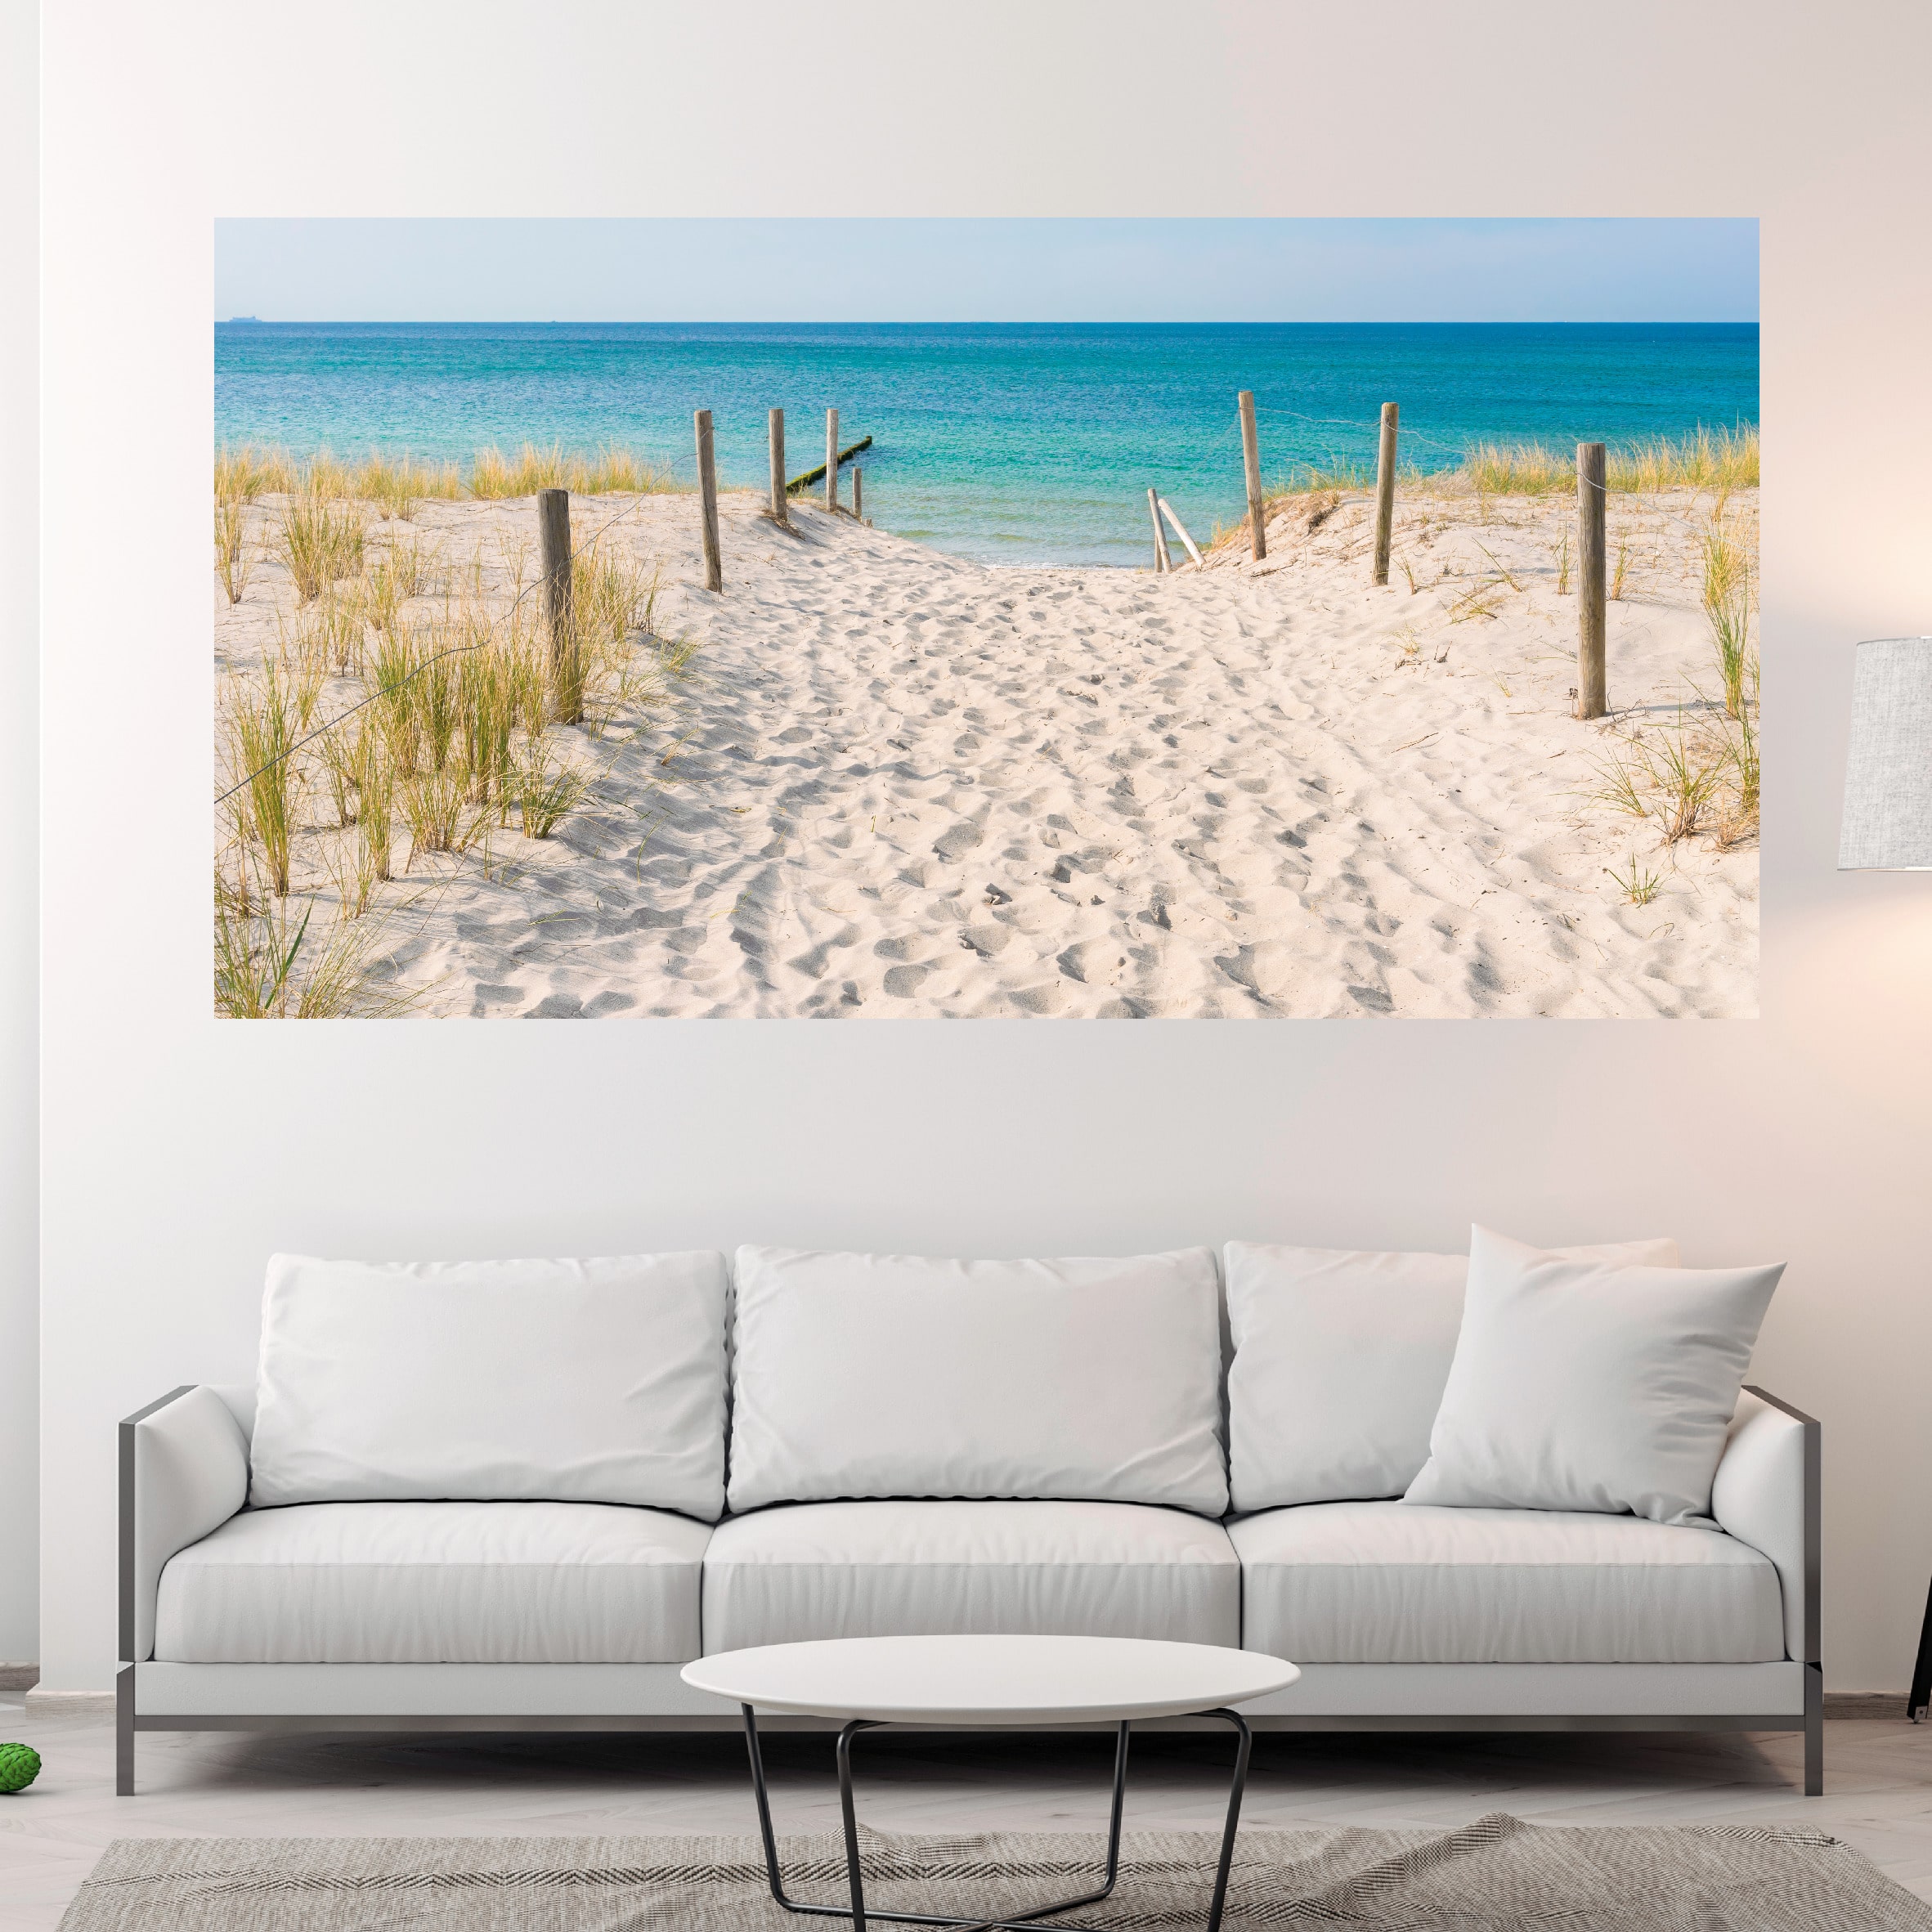 condensor mannetje Motivatie Canvas schilderij zee strand heerlijk - Kei-Gaaf